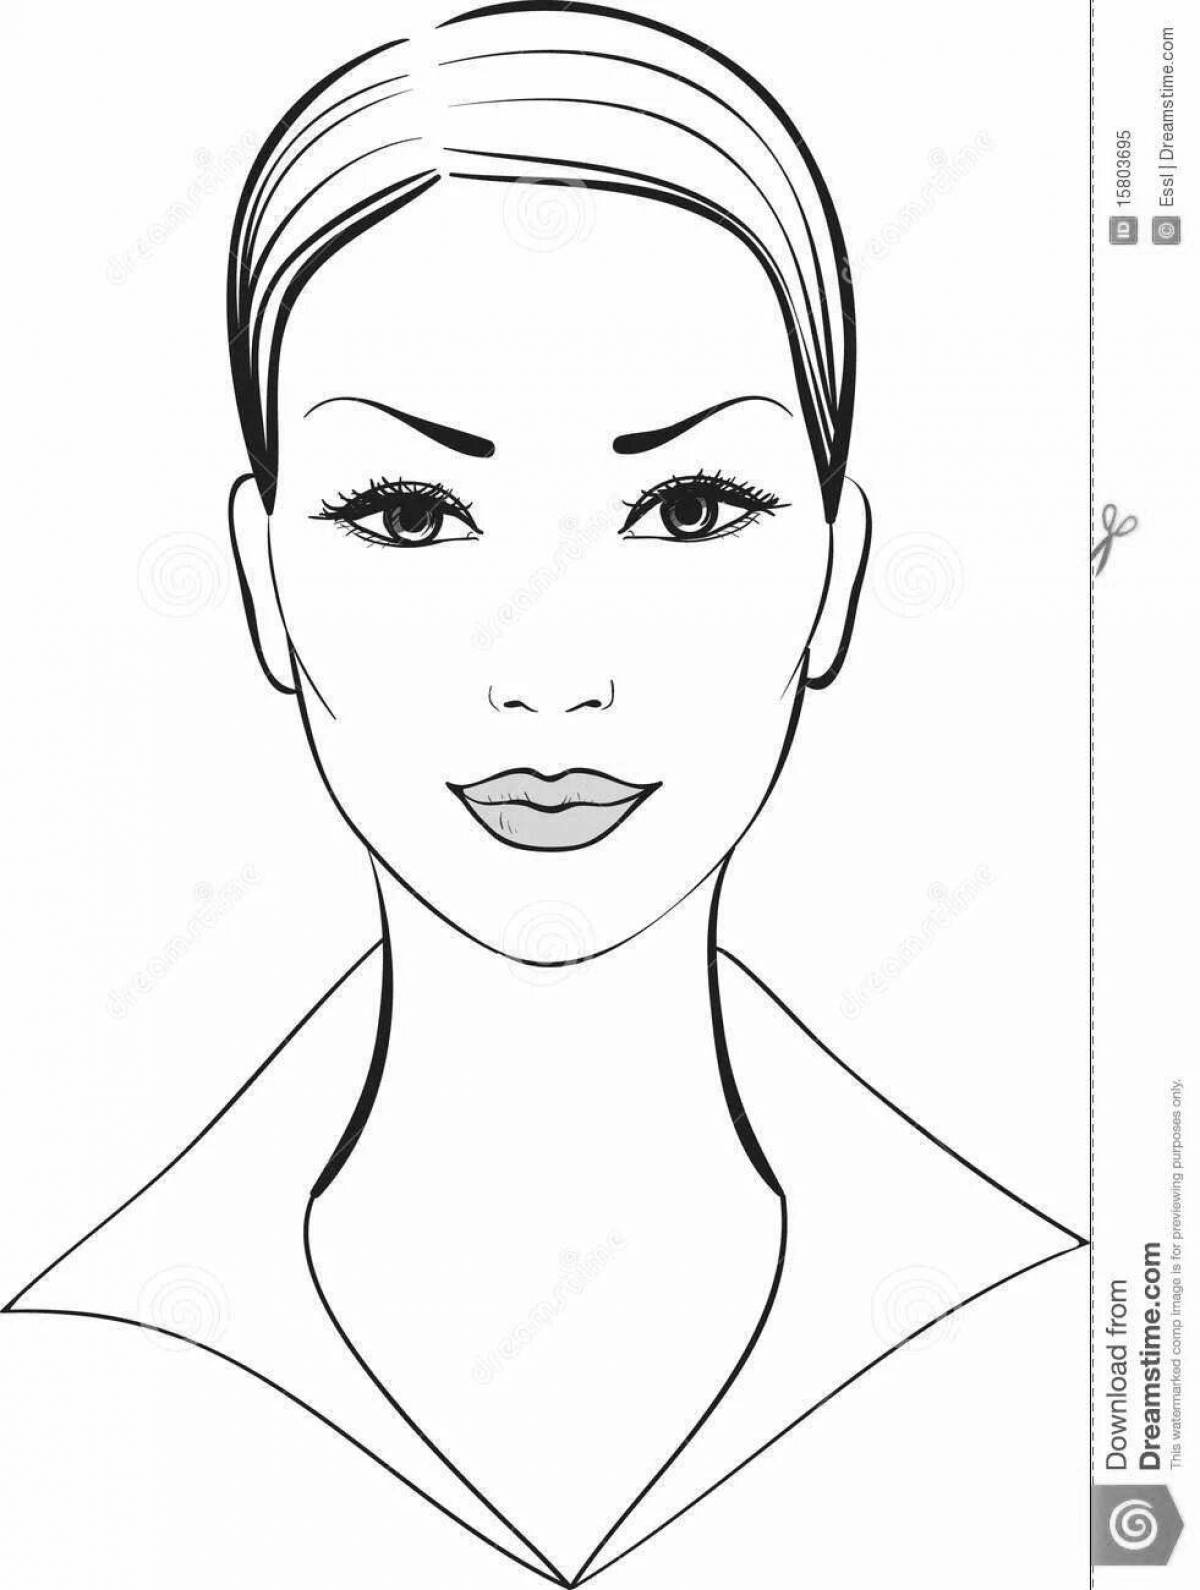 Элегантная раскраска лица девушки для макияжа без волос